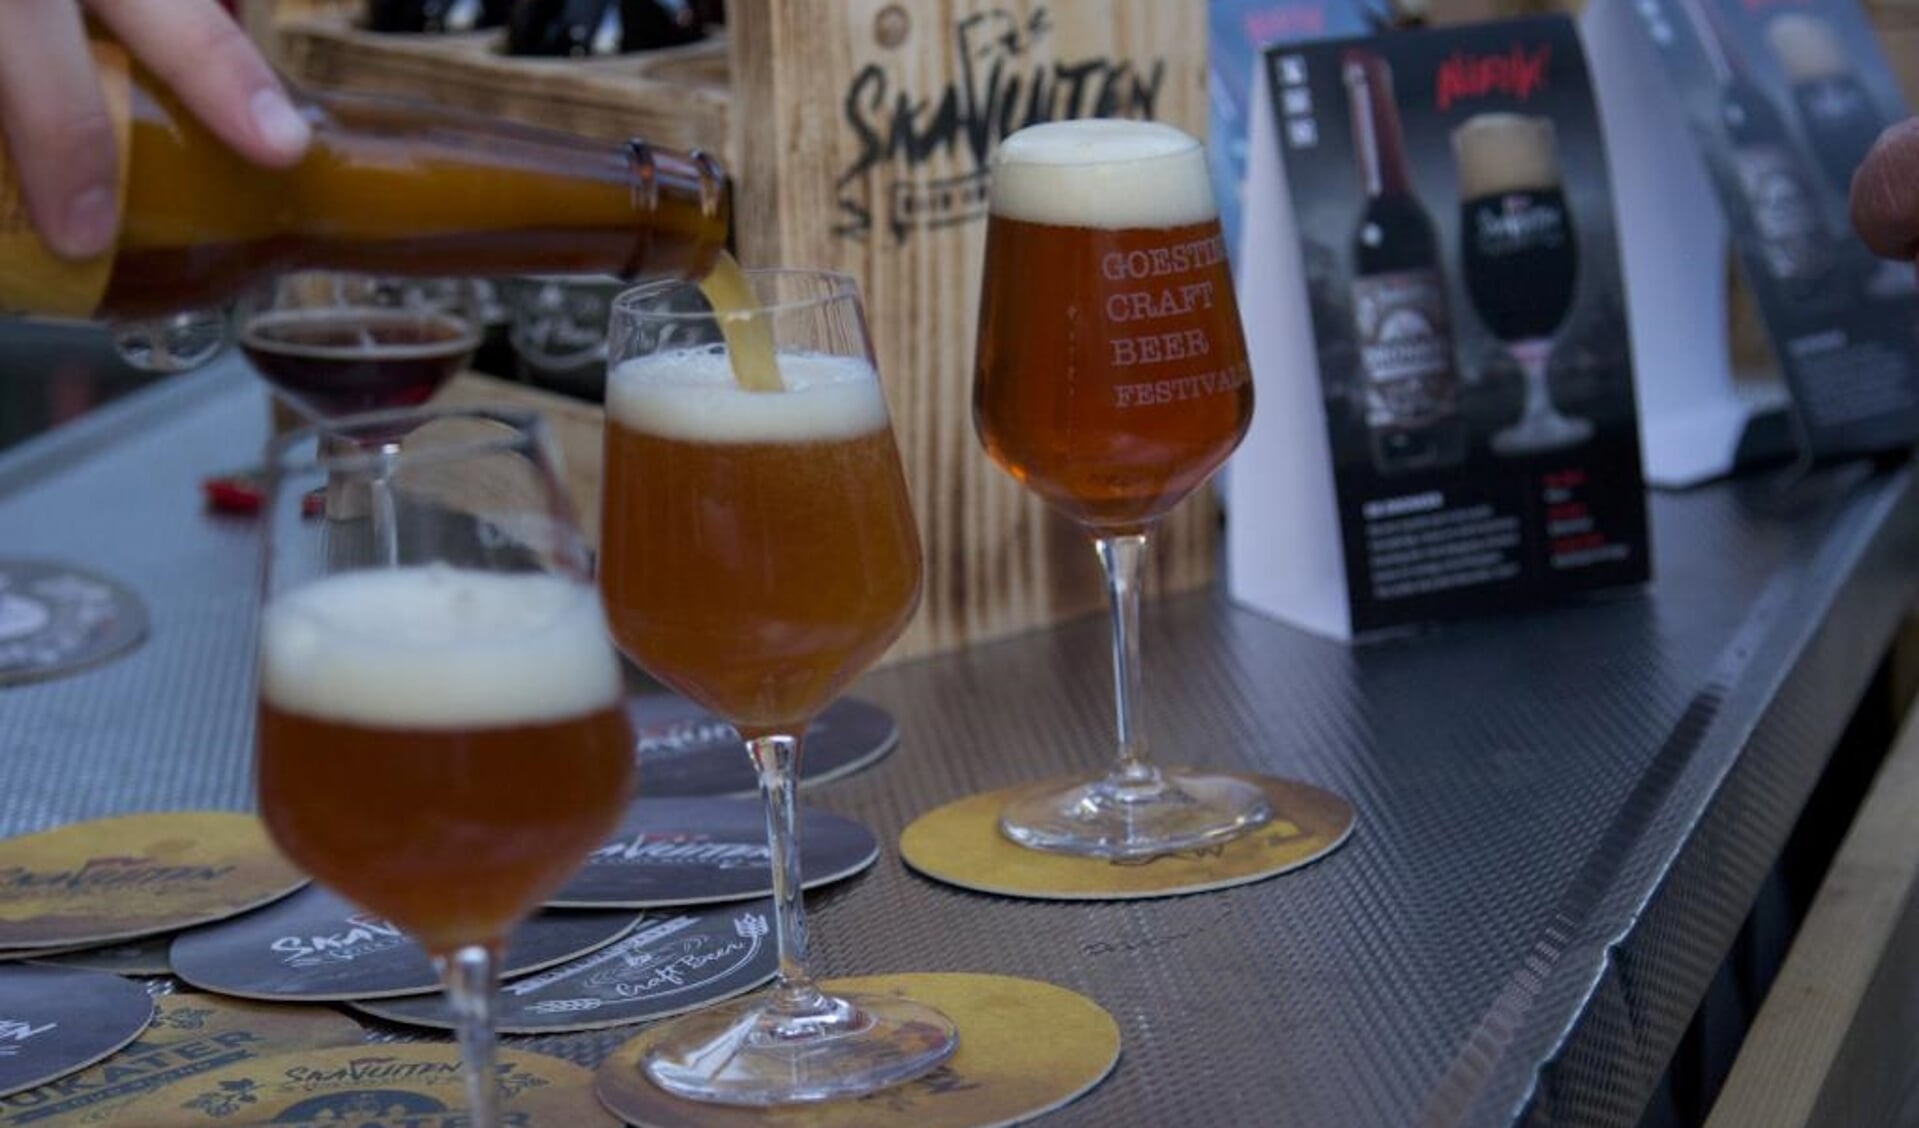 Goesting Craft Beer Festival: zestien brouwerijen uit zes verschillende landen presenteren ruim honderdtwintig verschillende bieren. 